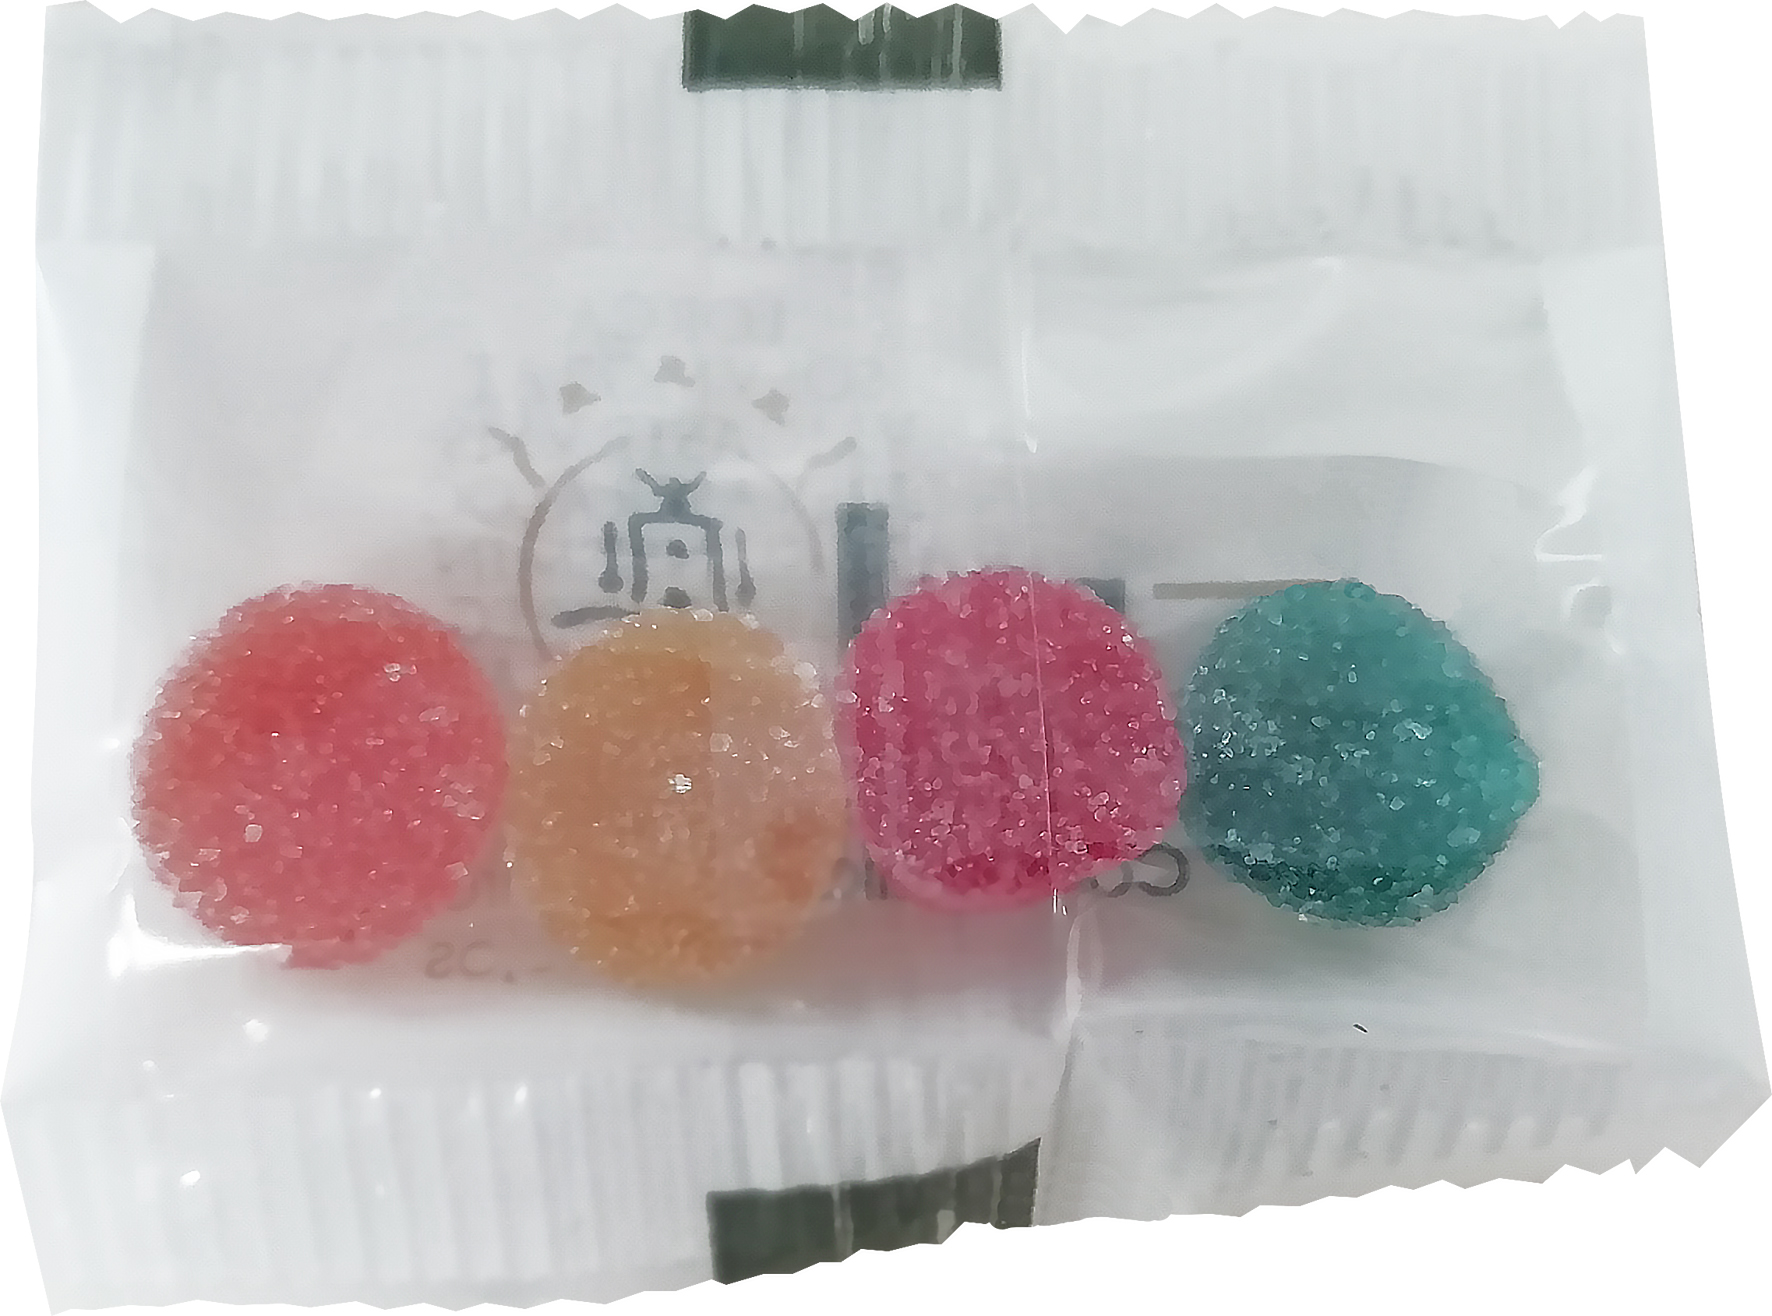 c 0070fp 00 09 - Fruit pastille bag (7.5g)